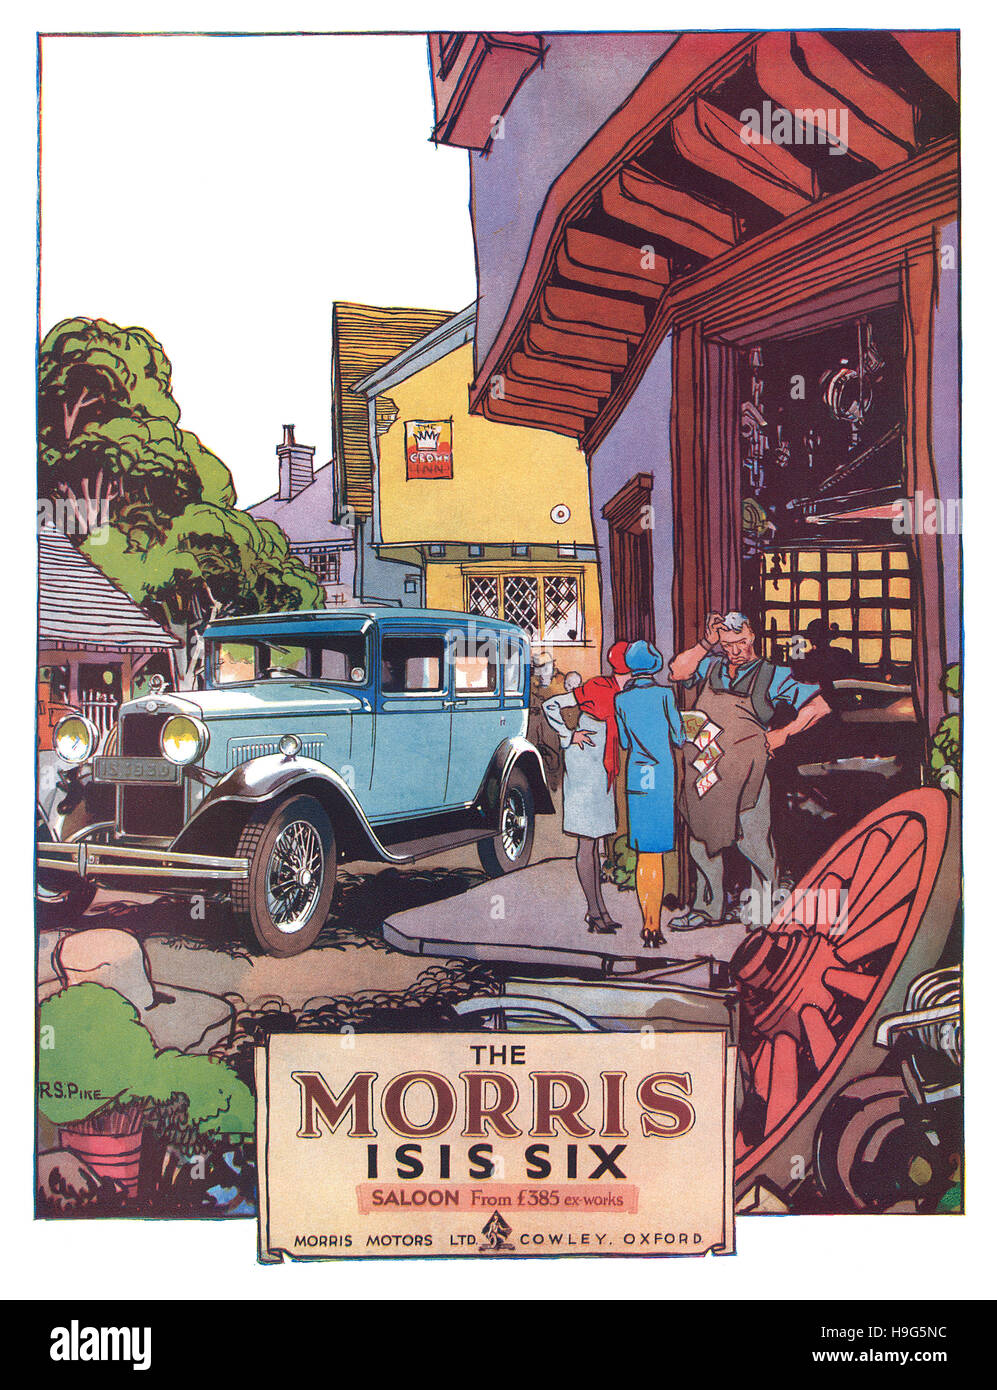 1930 British pubblicità per la Morris Isis sei autovettura illustrata da R.S. Pike Foto Stock